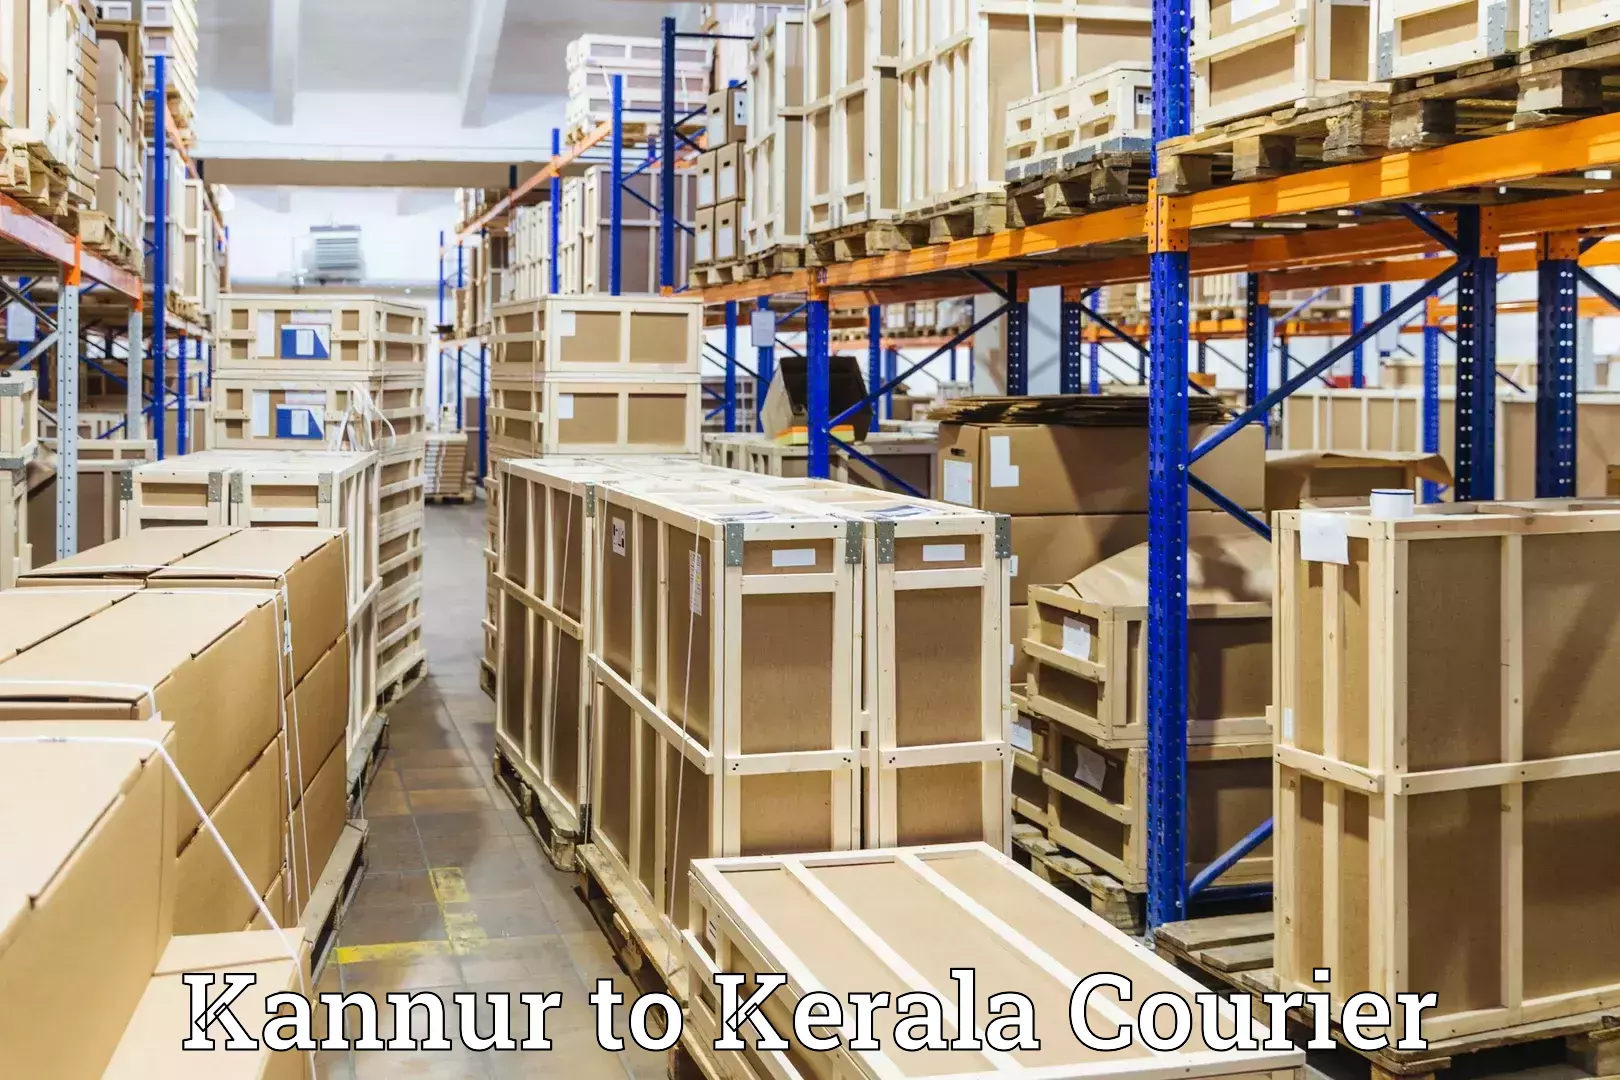 Baggage transport technology Kannur to Kallikkad